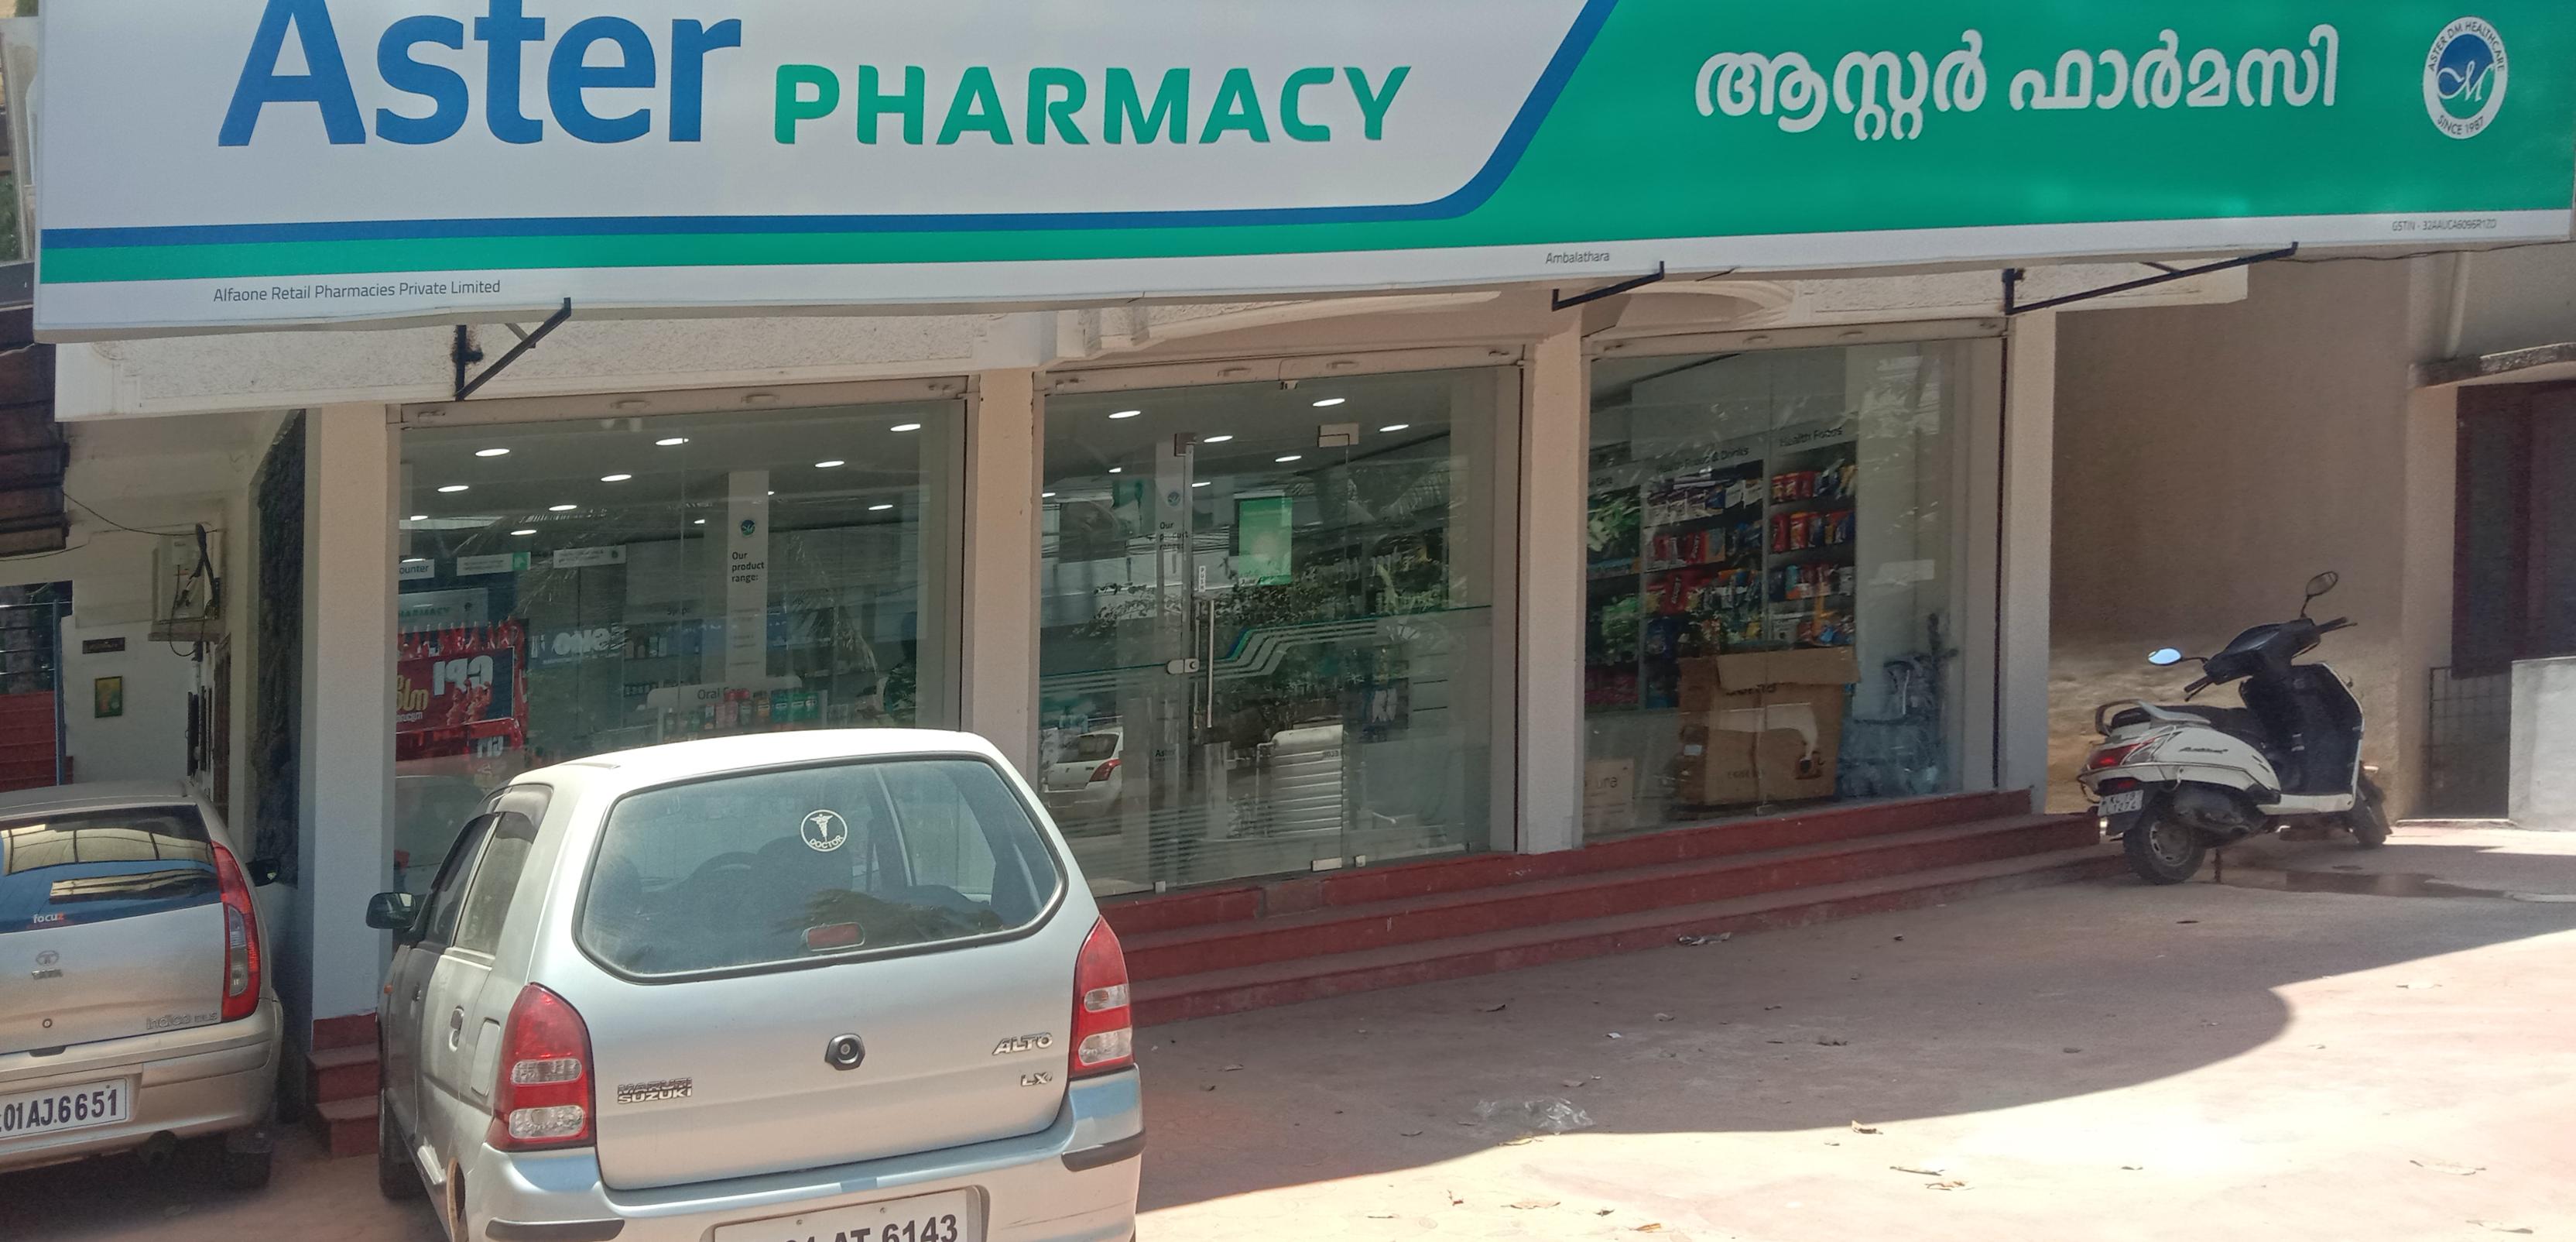 Aster Pharmacy in Ambalathara, Trivandrum